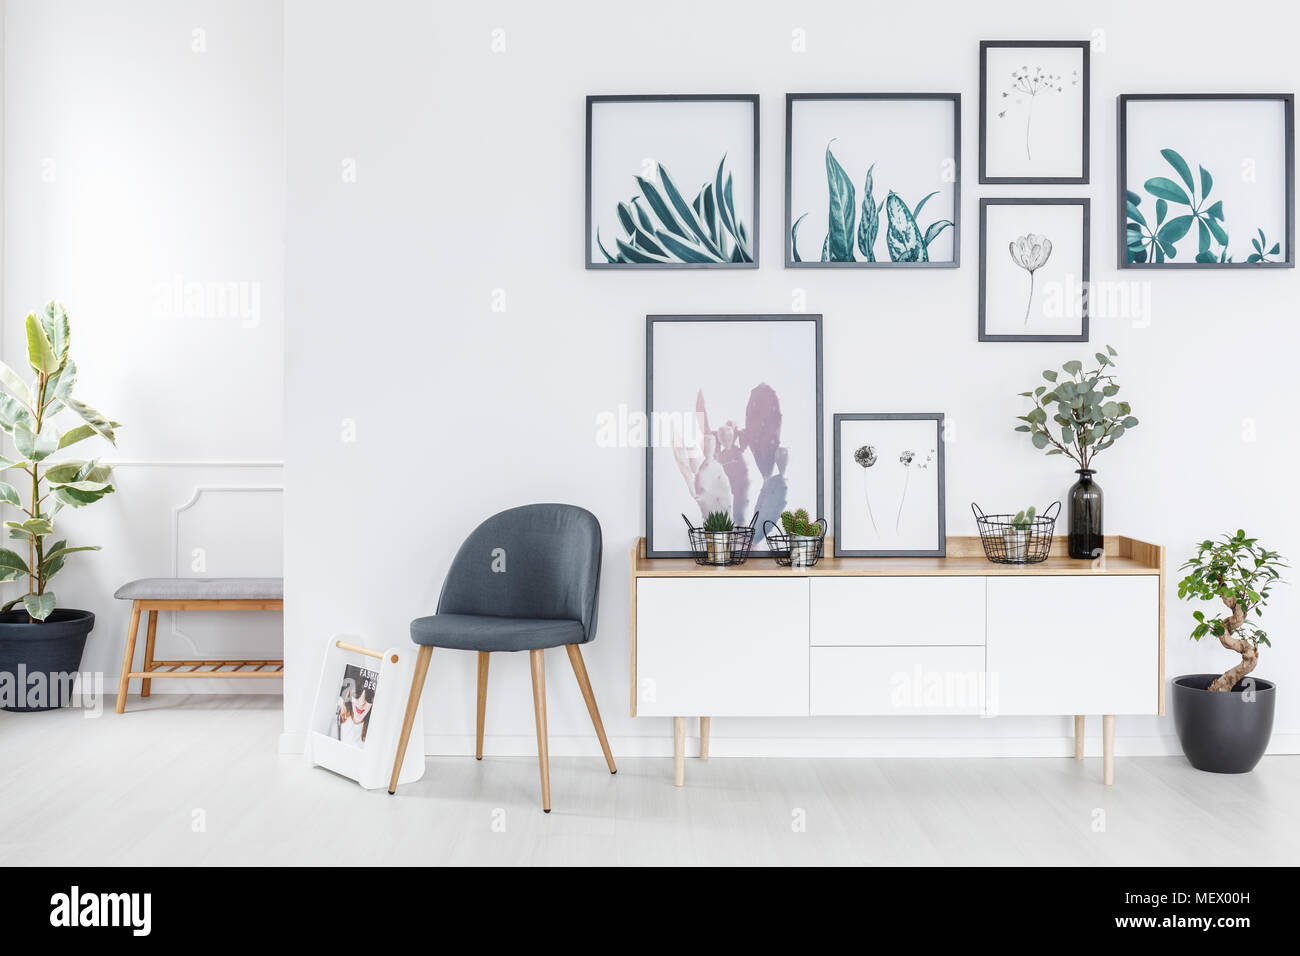 Grau Stuhl neben einem weißen Schrank mit frischen Pflanzen in hellen Innenraum mit Galerie an der Wand Stockfoto